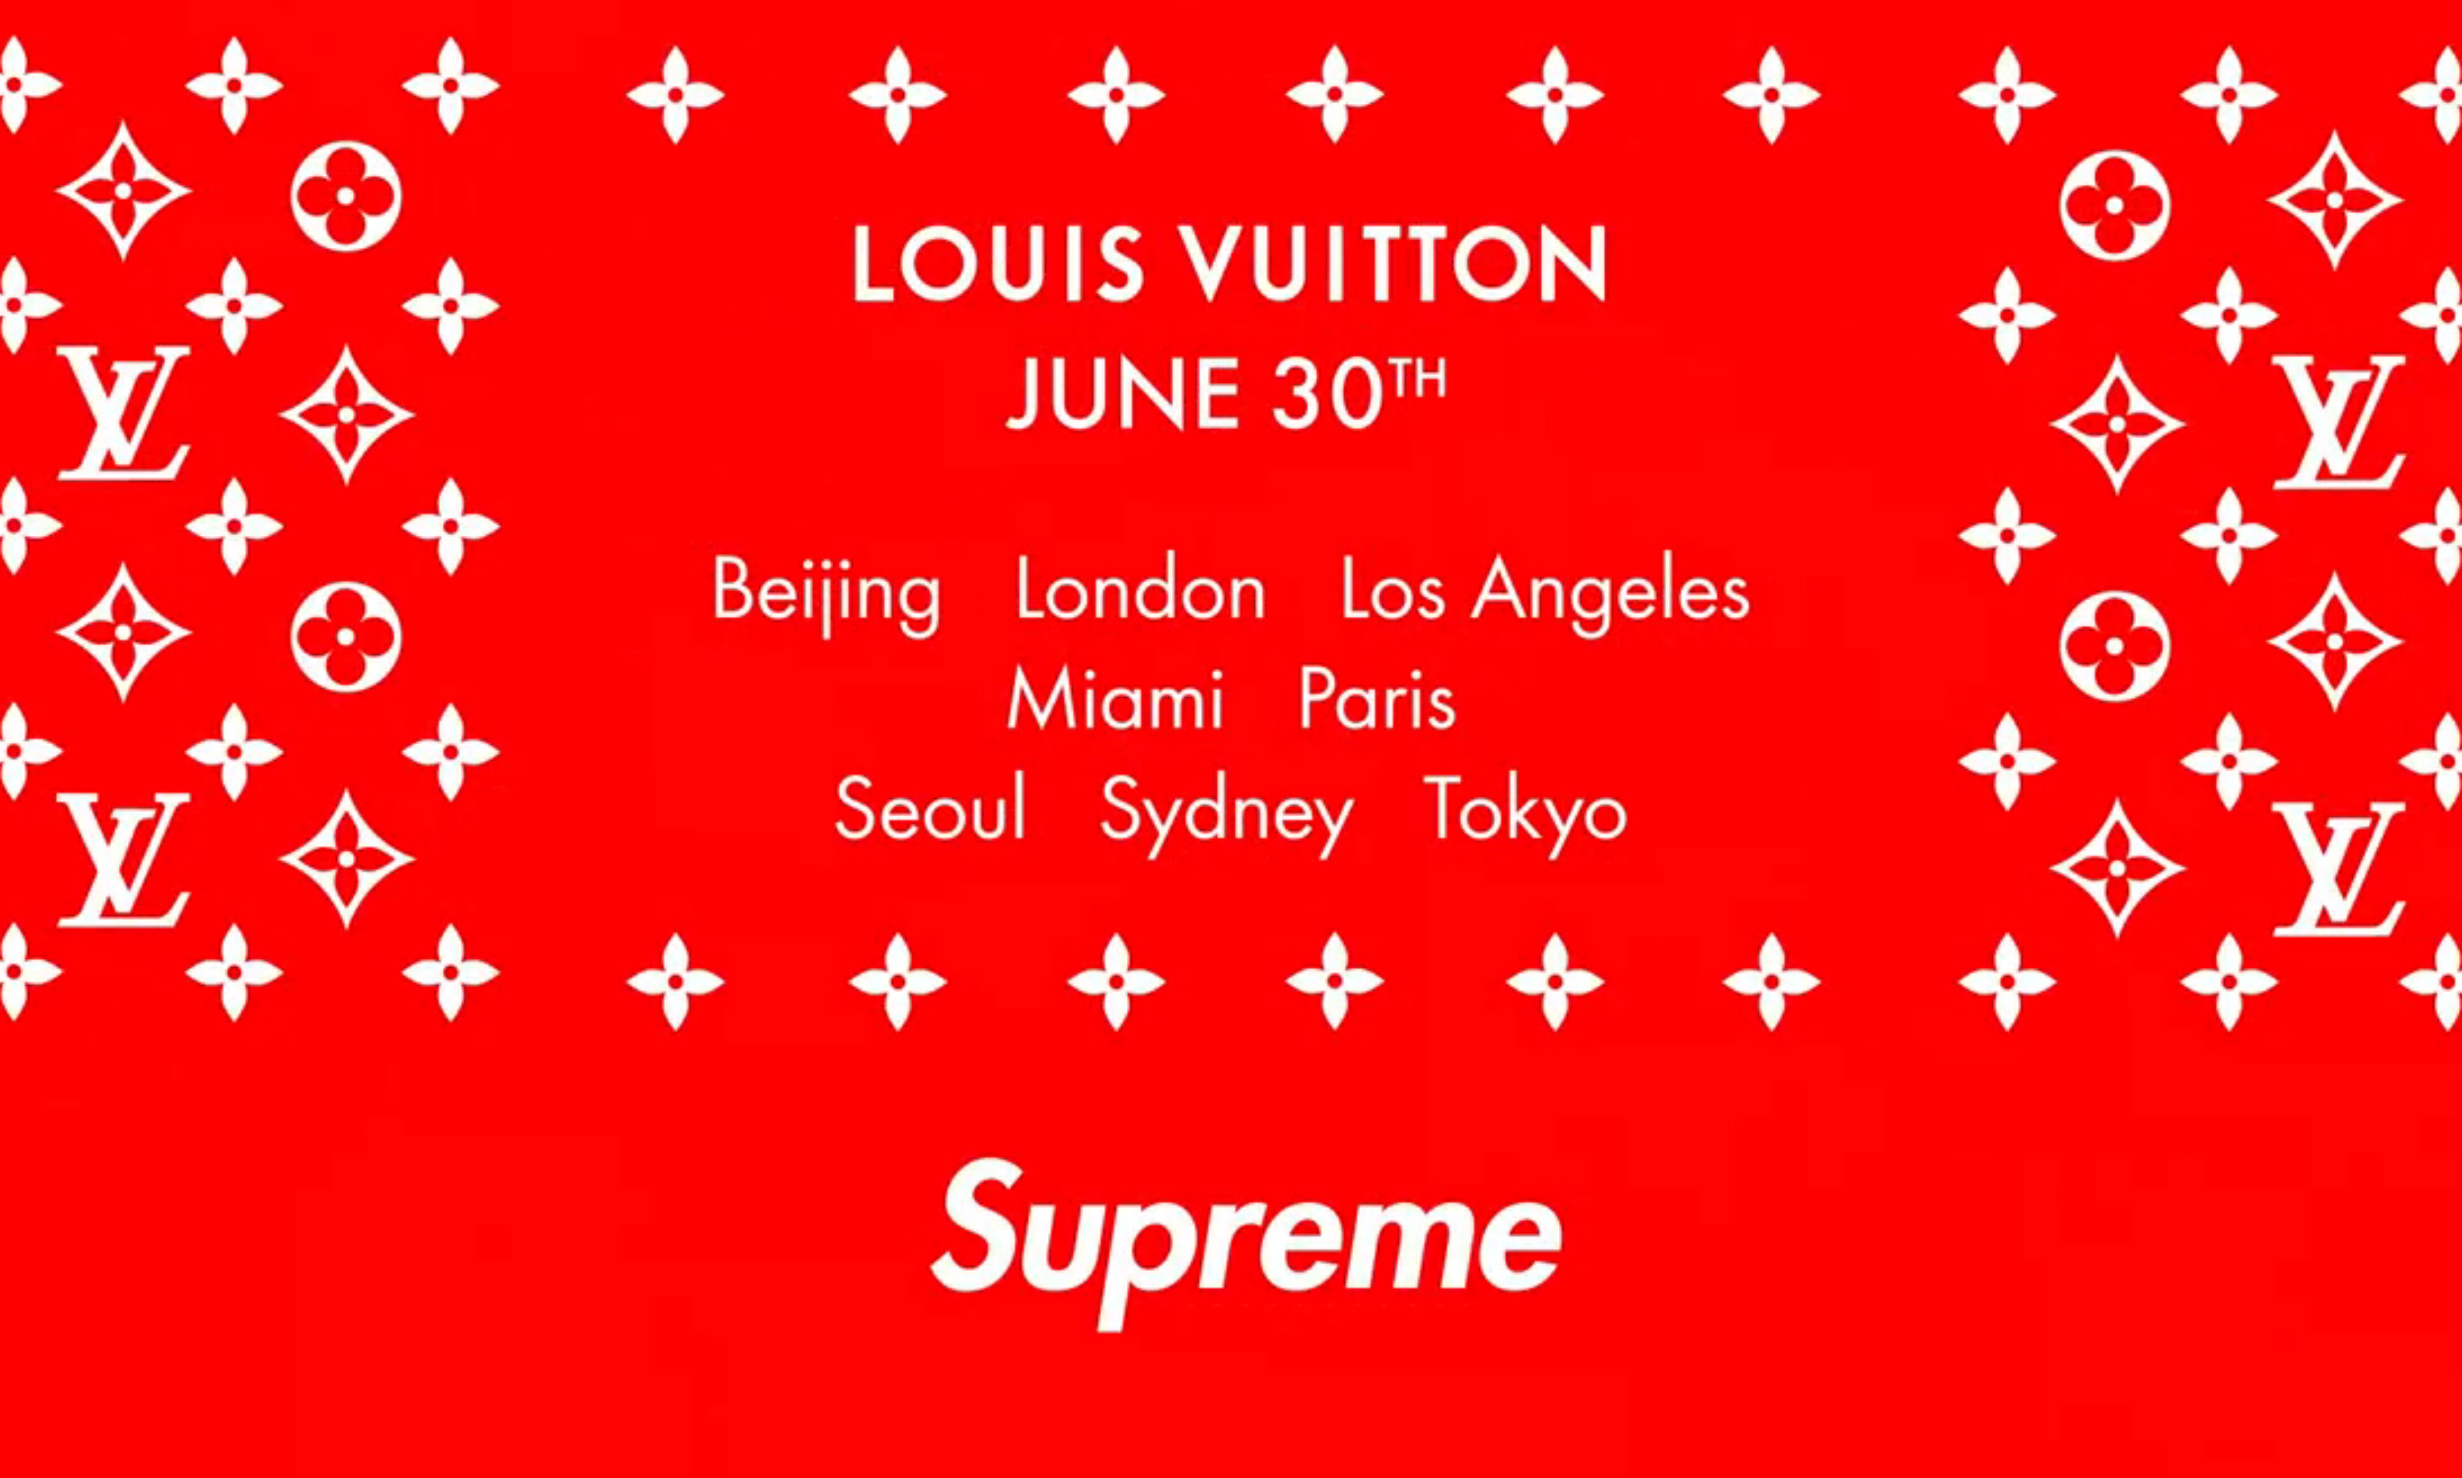 Supreme x Louis Vuitton 北京 798 期间限定店即将重新开幕